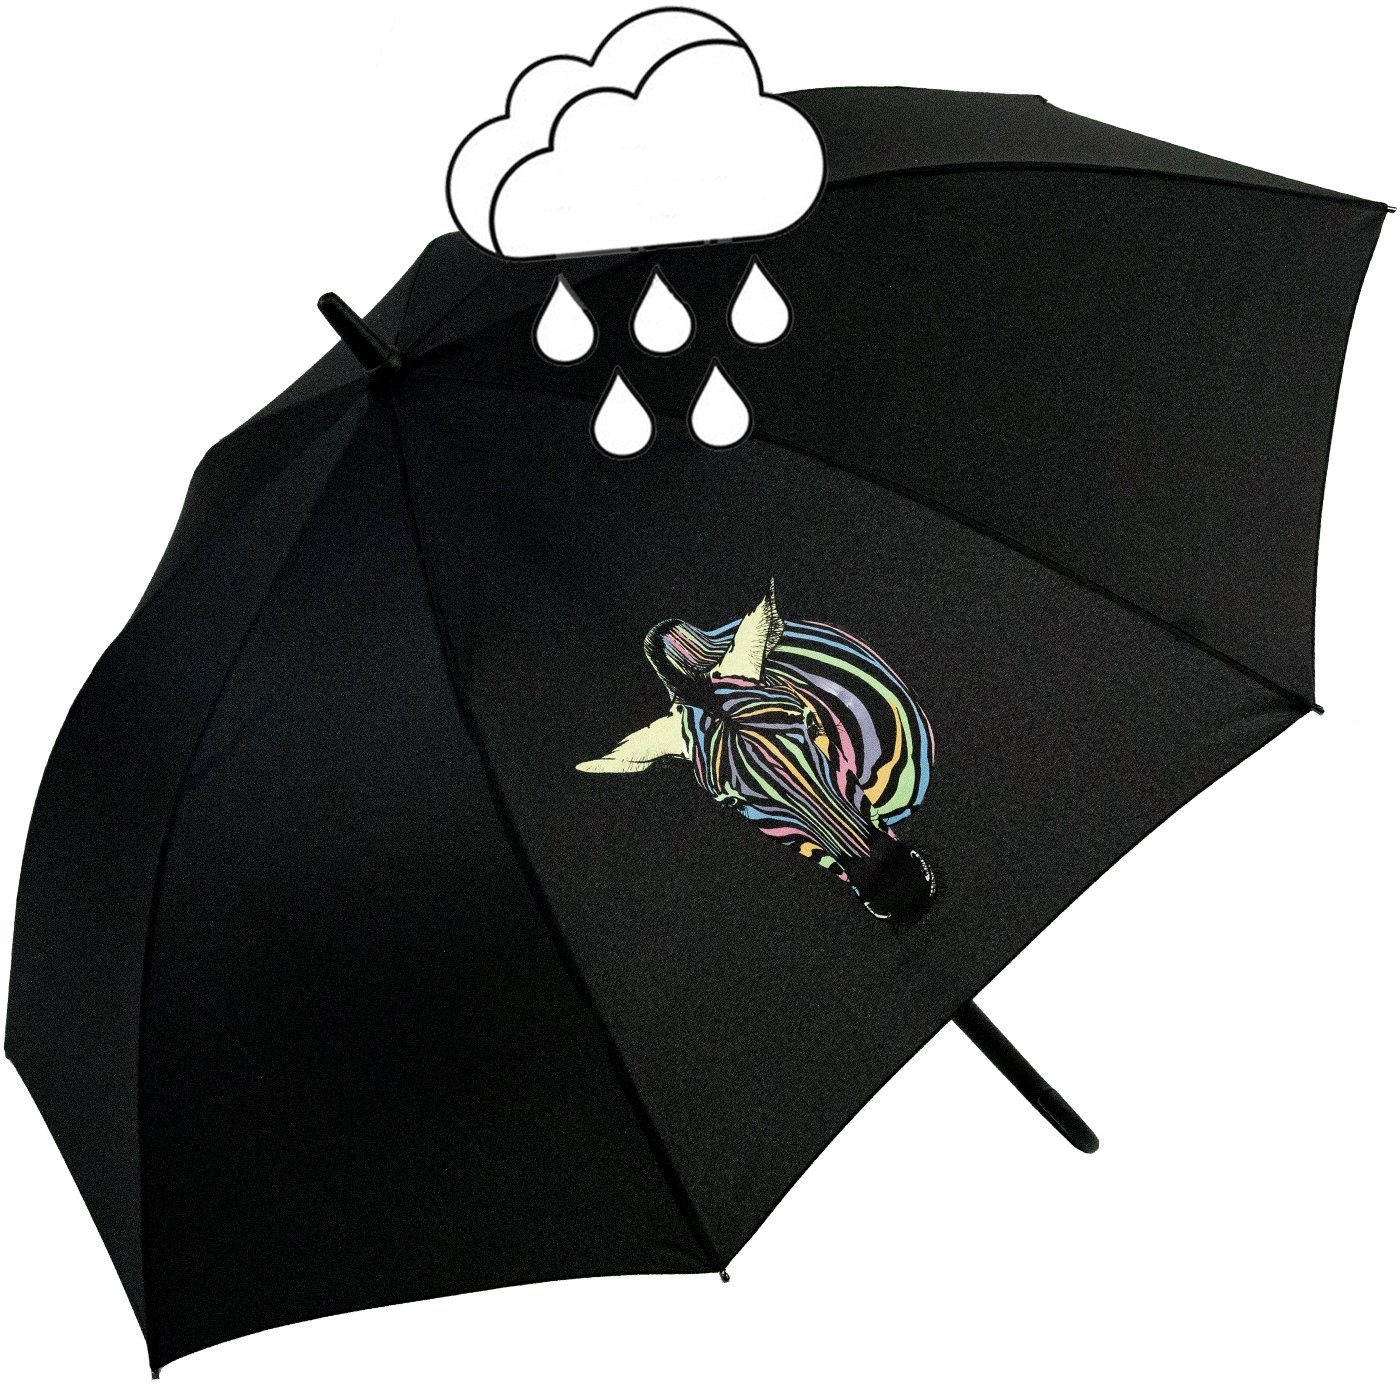 Auf-Automatik Damen-Regenschirm - Nässe Impliva Wow-Effekt, Wetprint bei Langregenschirm Farbwechsel Zebra mit und